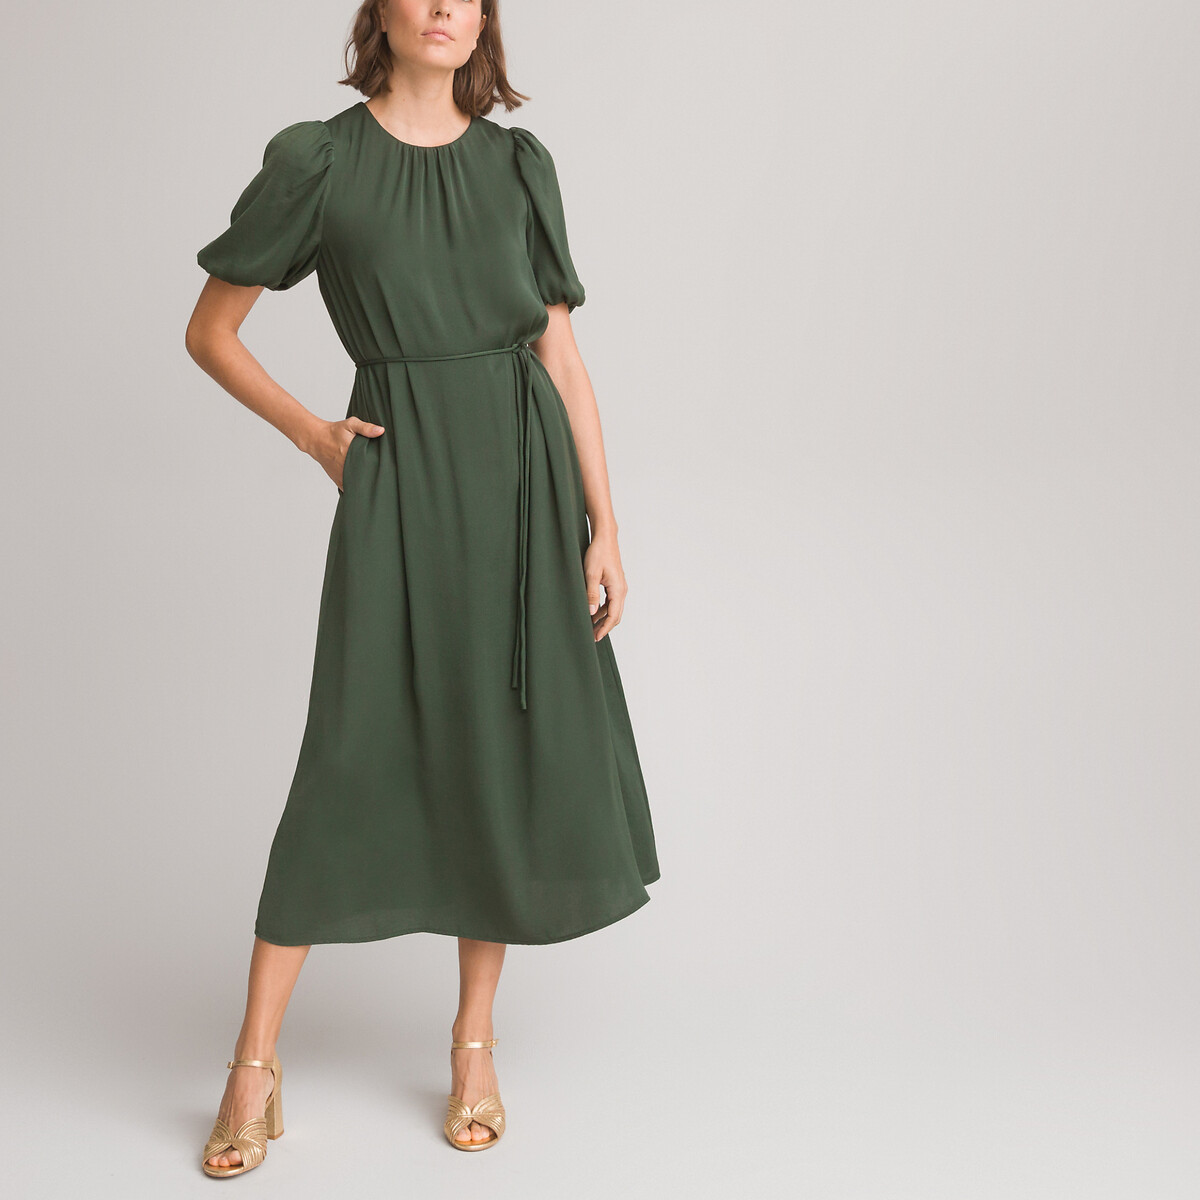 Платье длинное расклешенное с круглым вырезом и короткими рукавами с напуском 44 зеленый